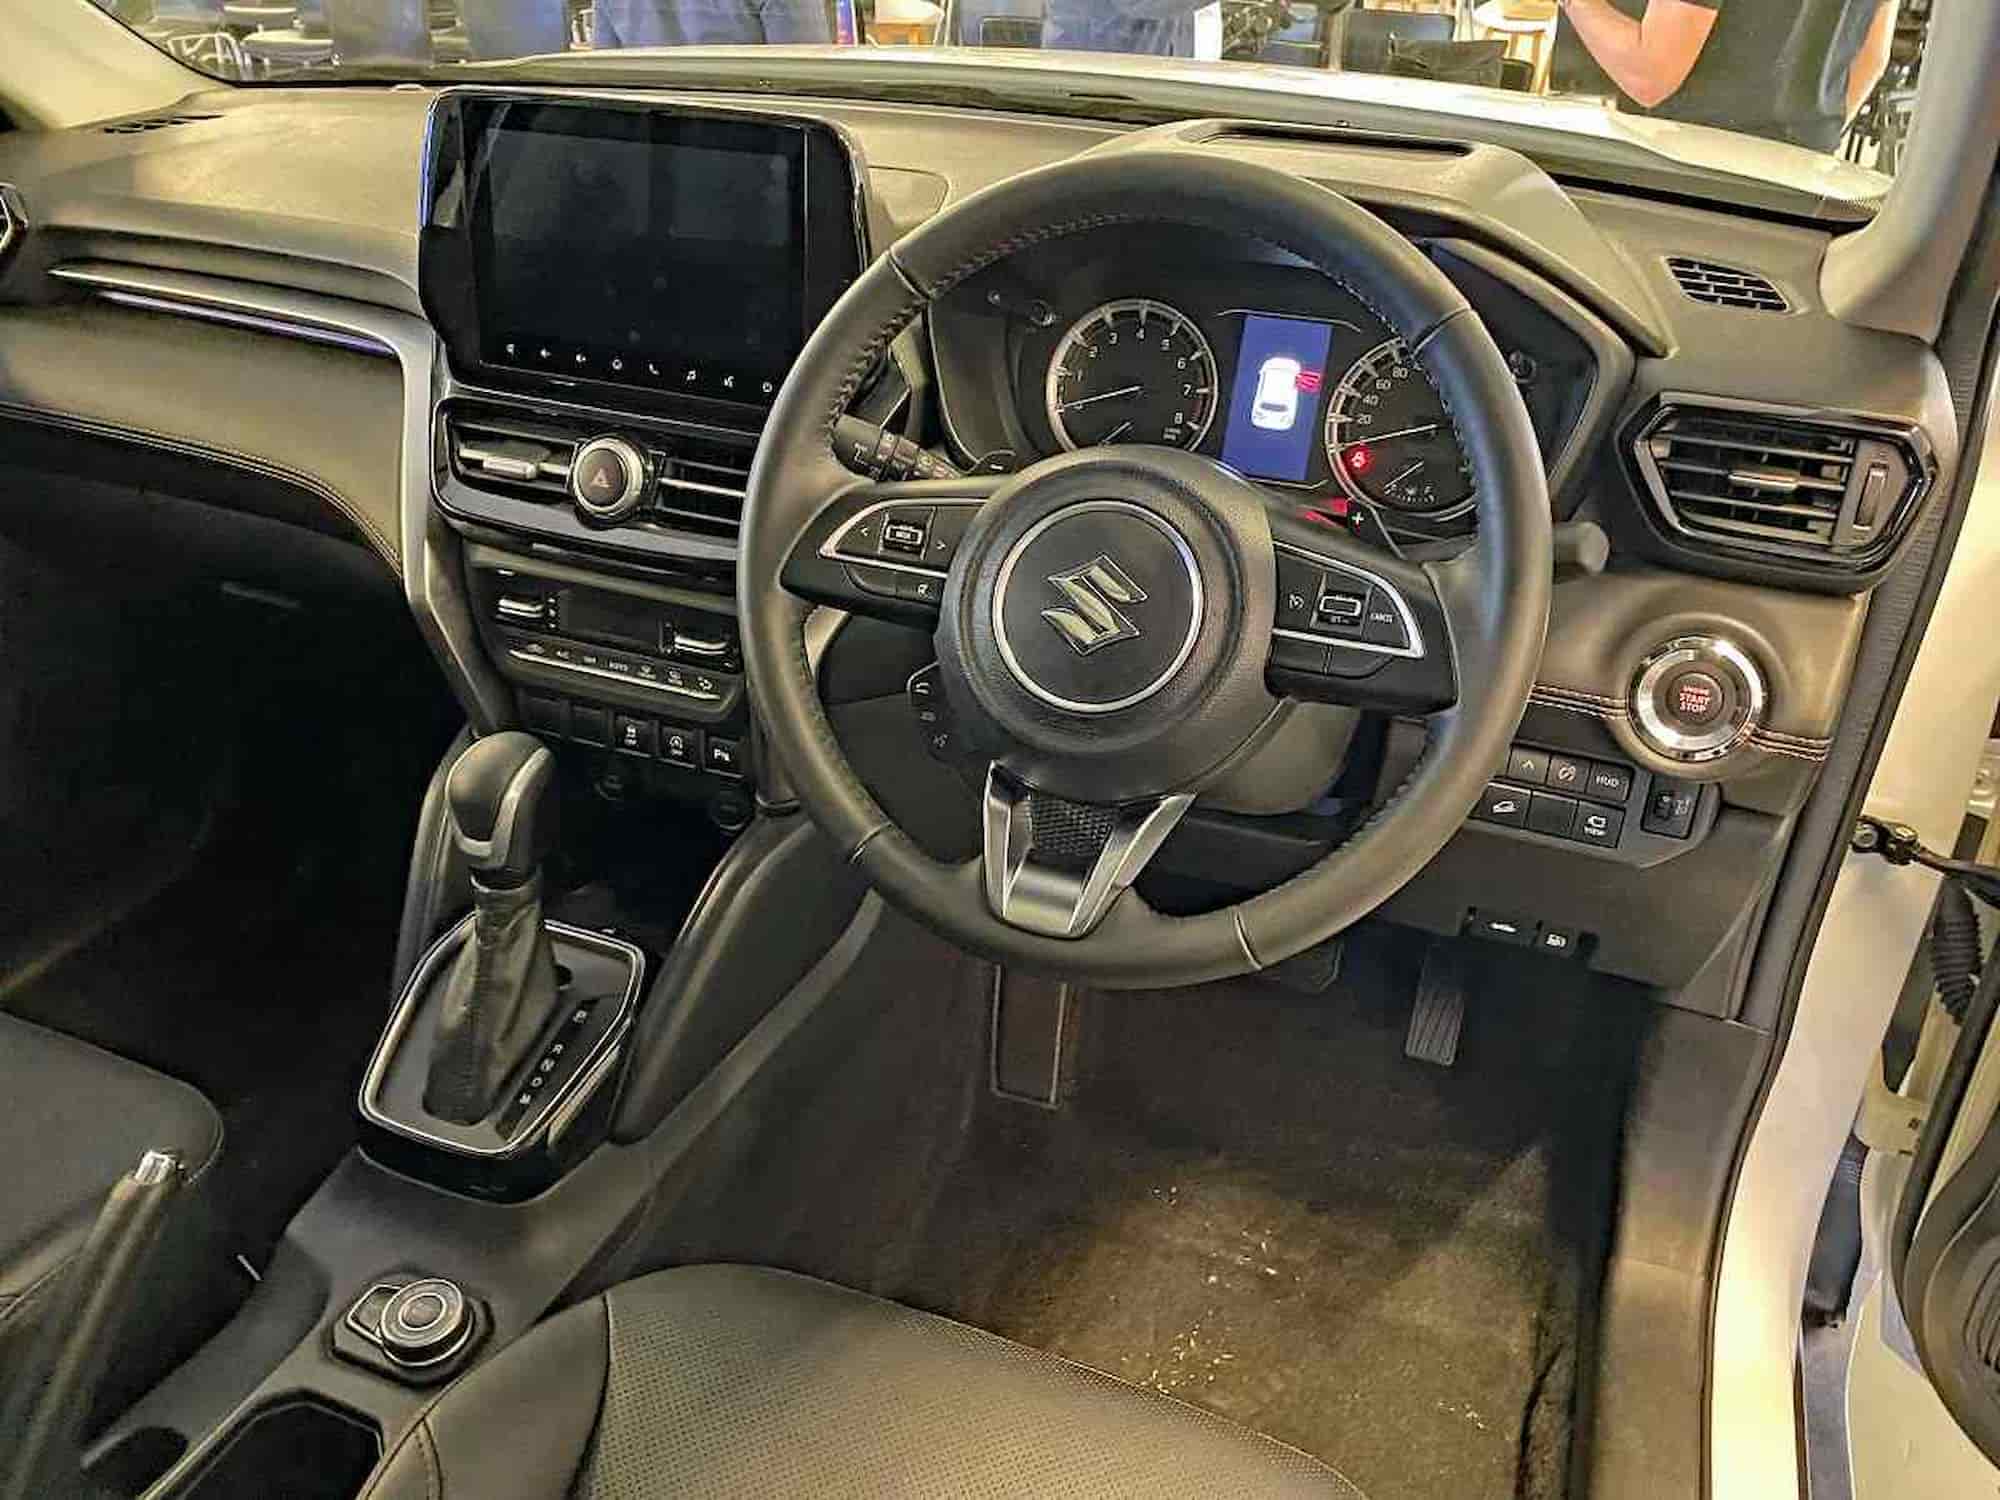 Suzuki Grand Vitara Interior